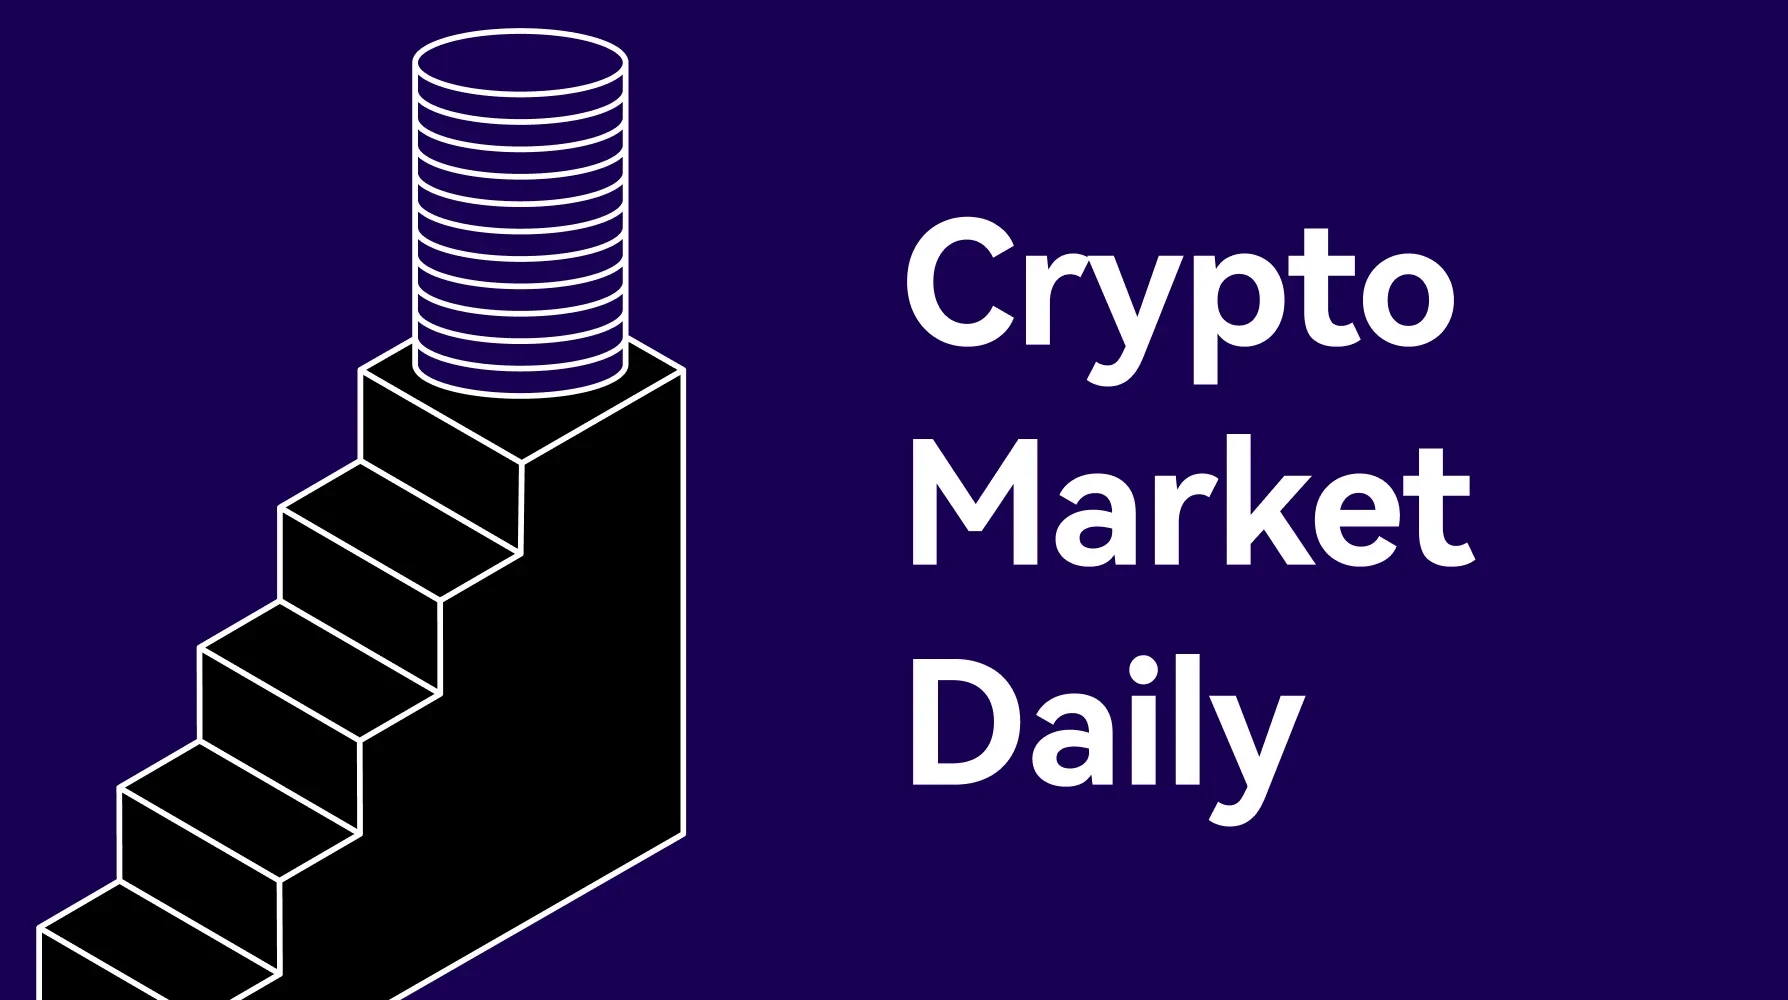 Crypto Market Daily